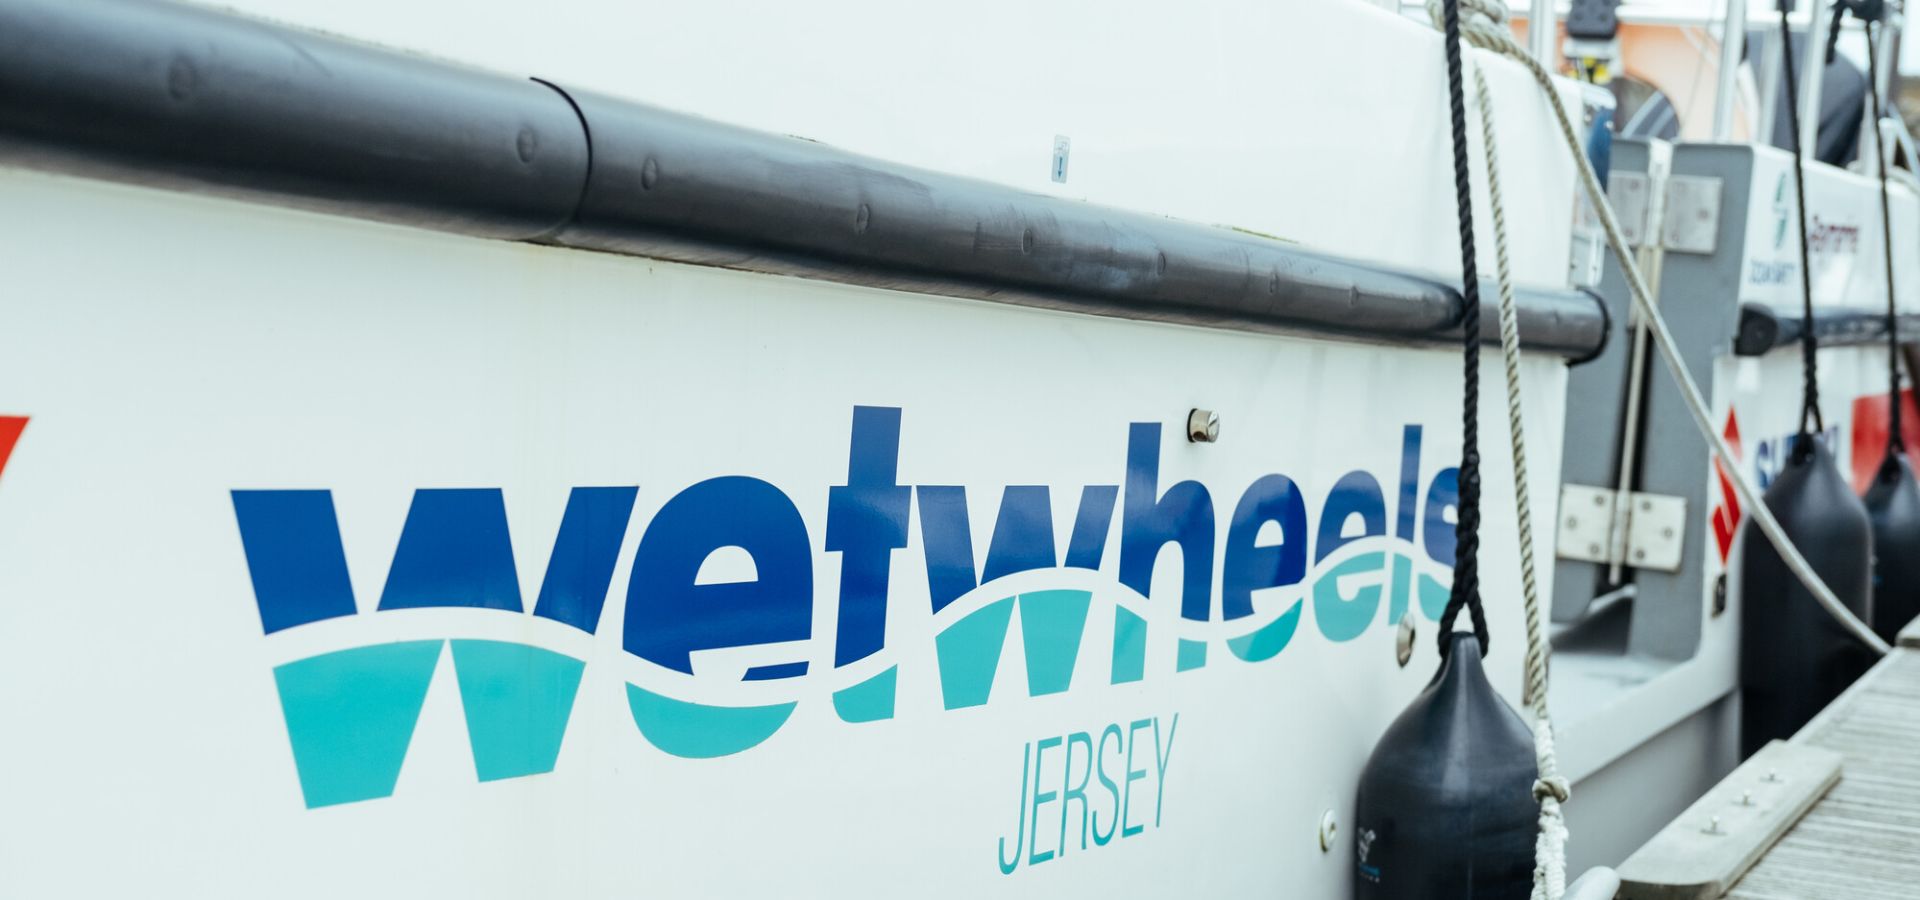 Wetwheels Foundation Jersey